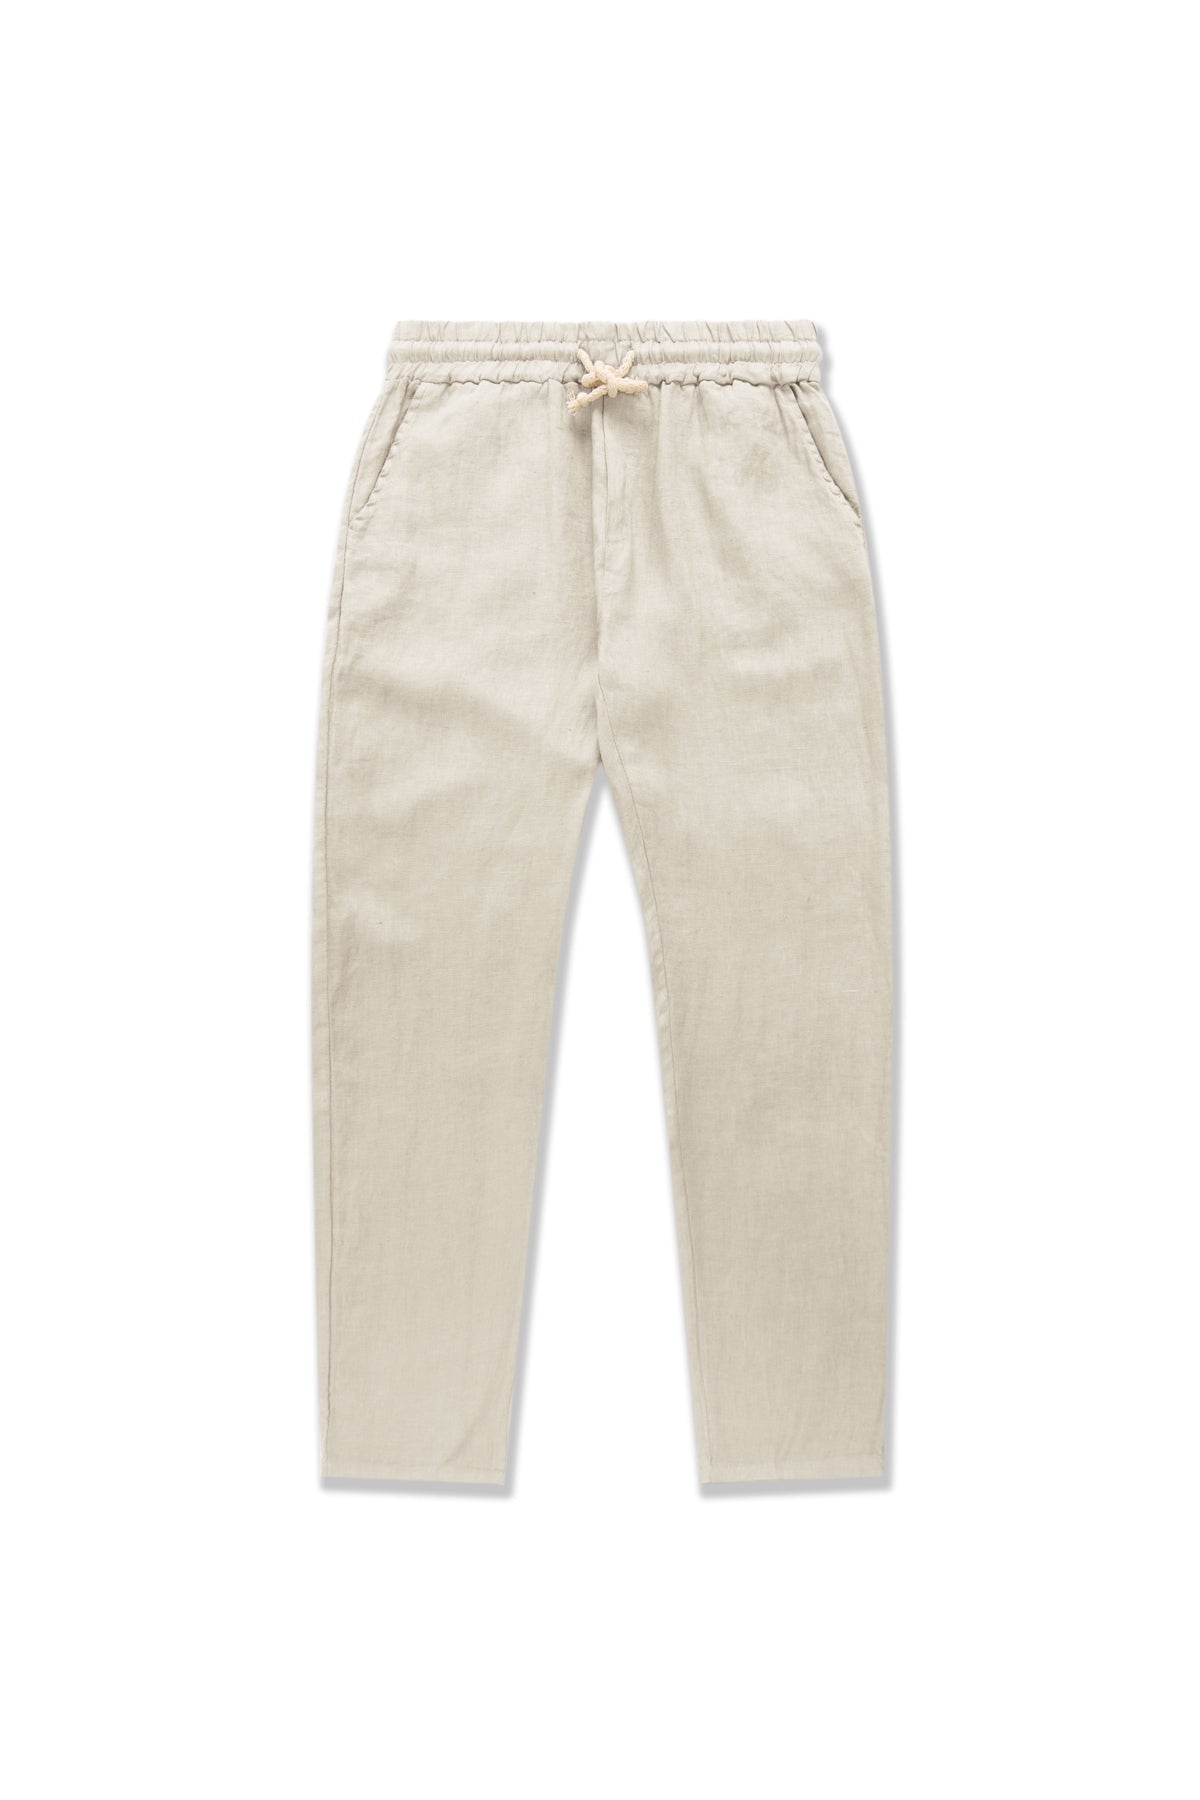 Cream Premium Linen Pants - Polonio